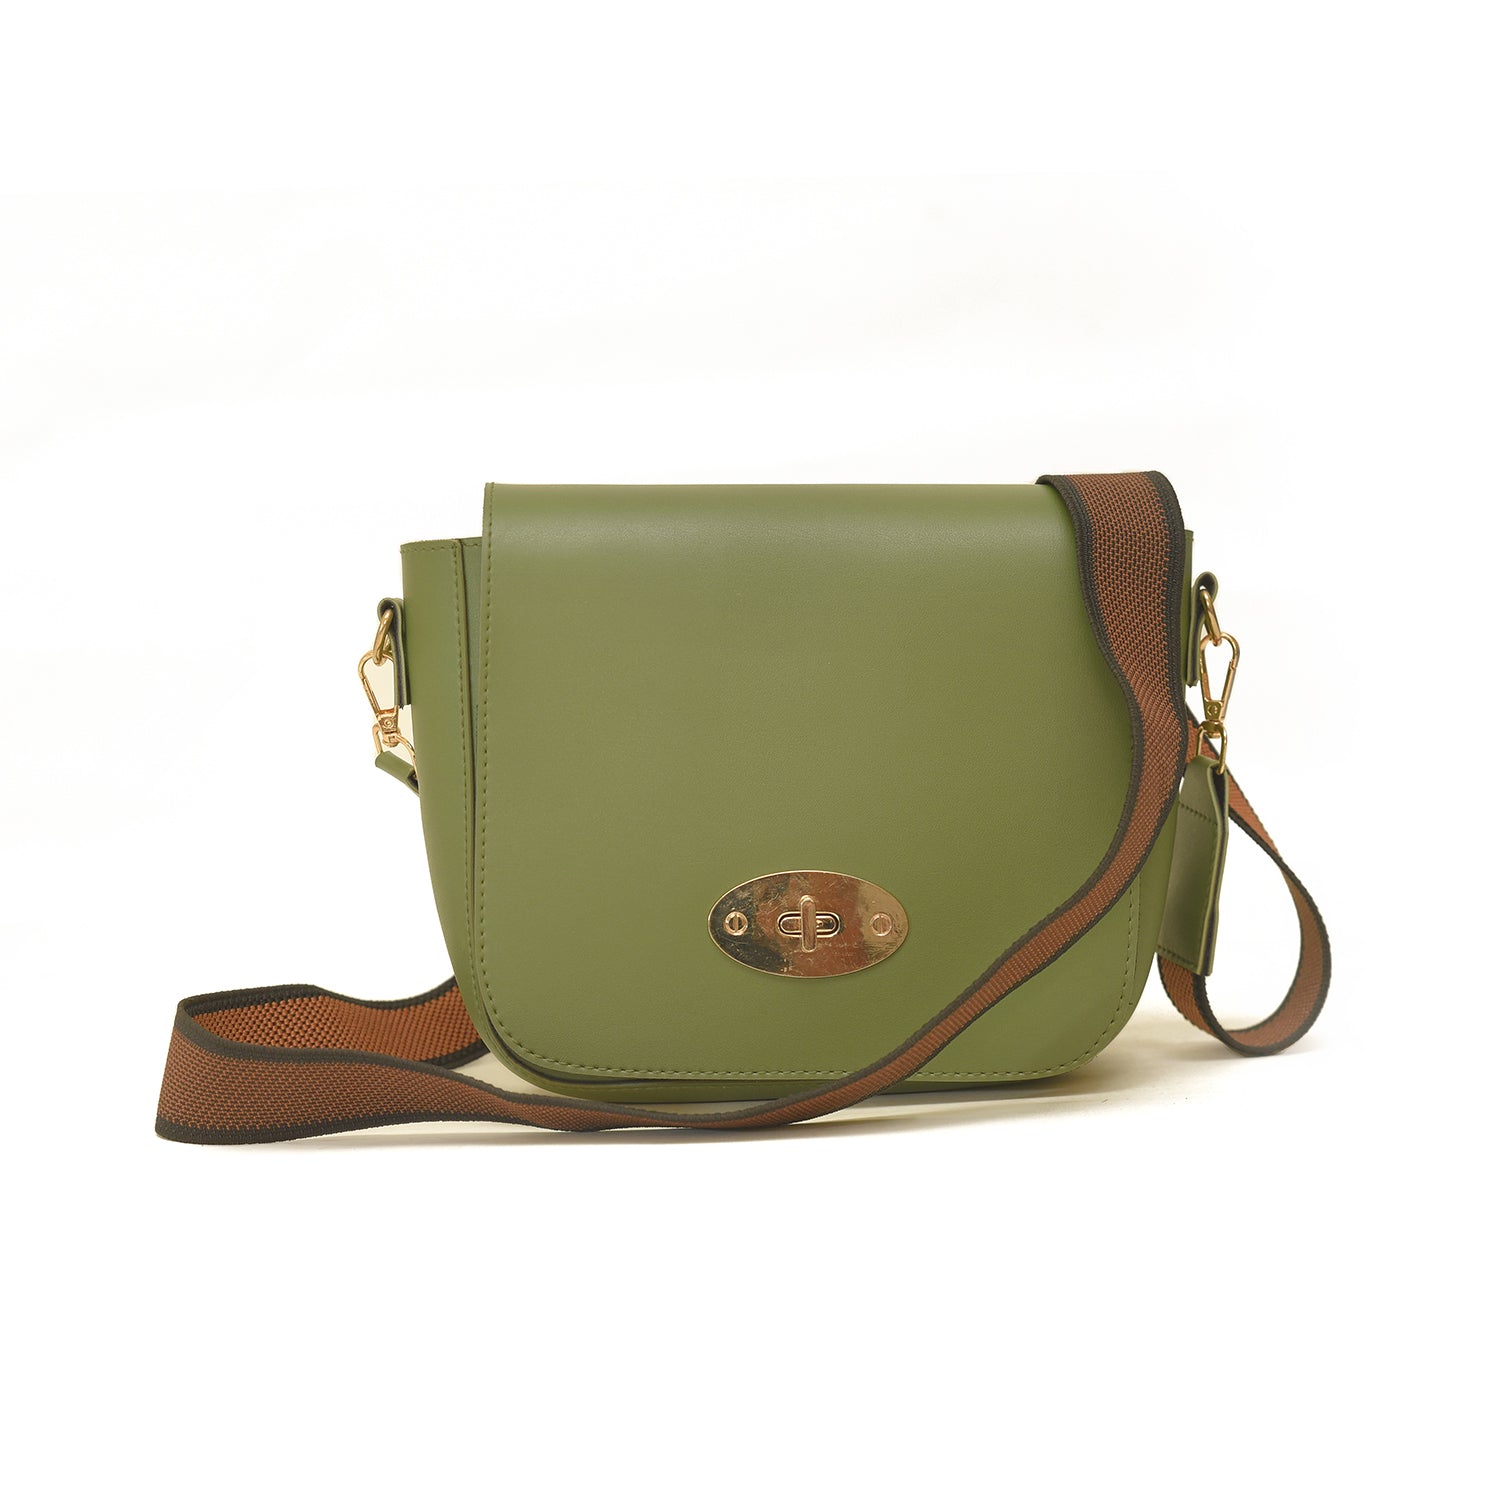 Xside Olive Green Bag